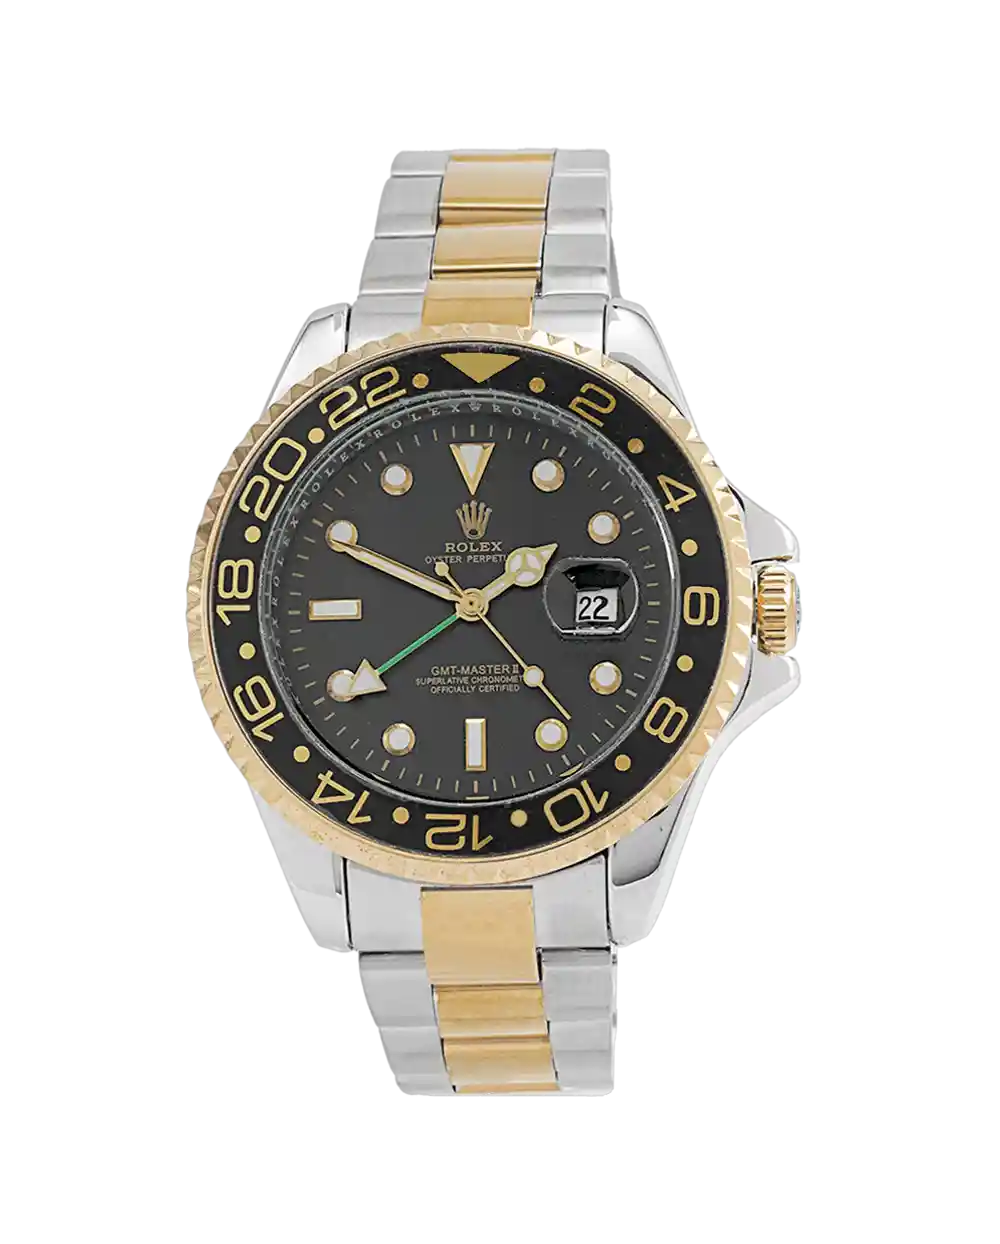 خرید ساعت مچی مردانه رولکس ROLEX طرح ساب مارین مدل 2003 بند استیل نقره ای طلایی و صفحه مشکی رنگ ثابت بهترین قیمت و ضمانت و ارسال رایگان